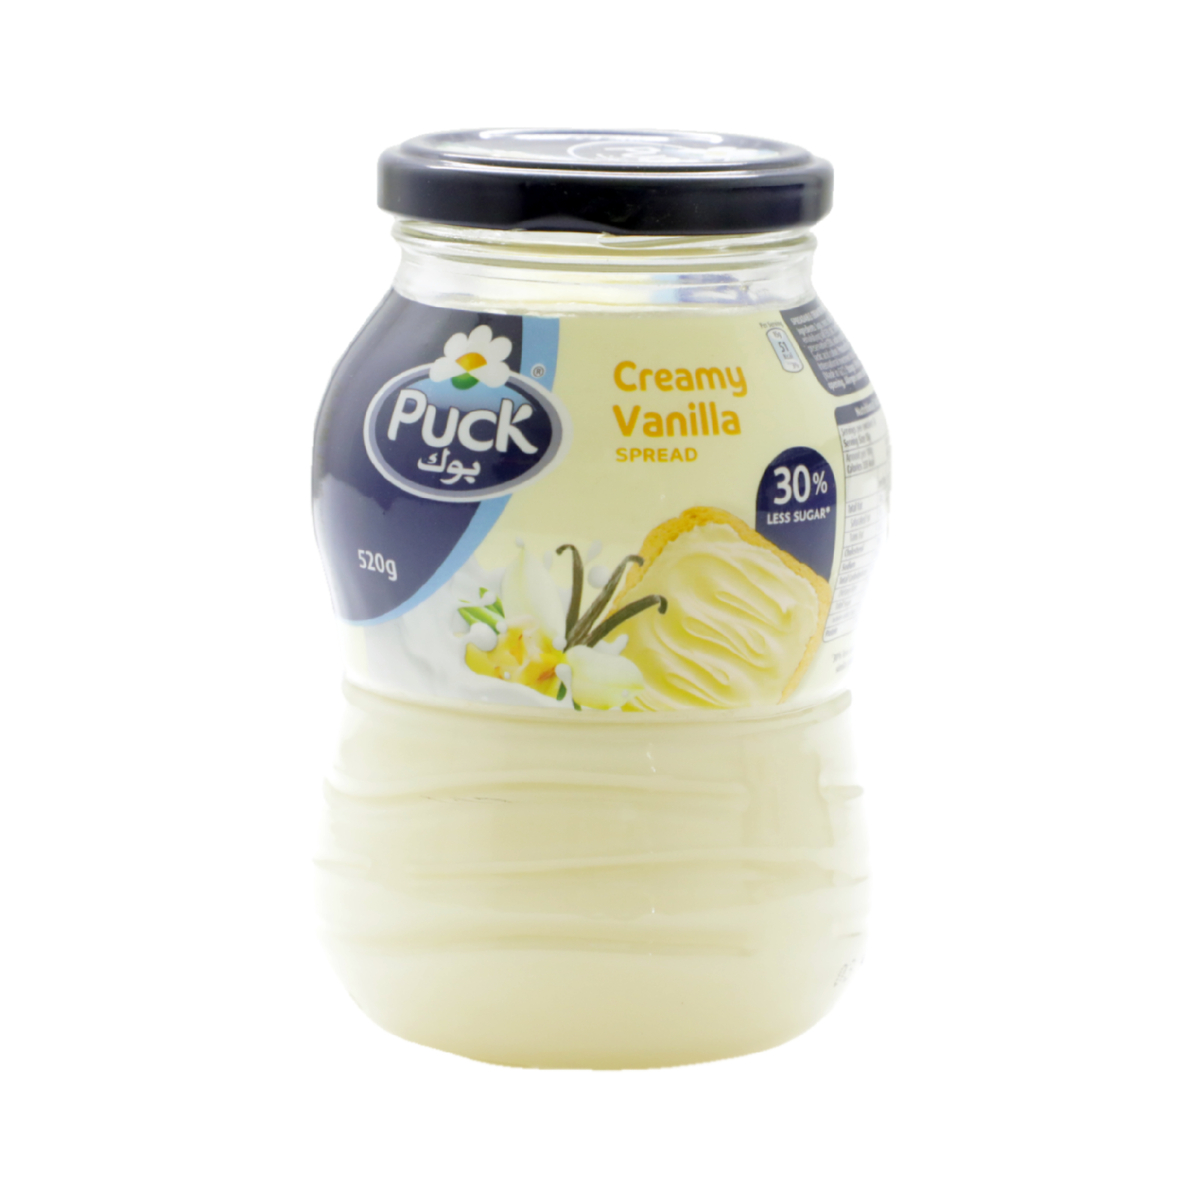 Puck Creamy Vanilla Spread 520g